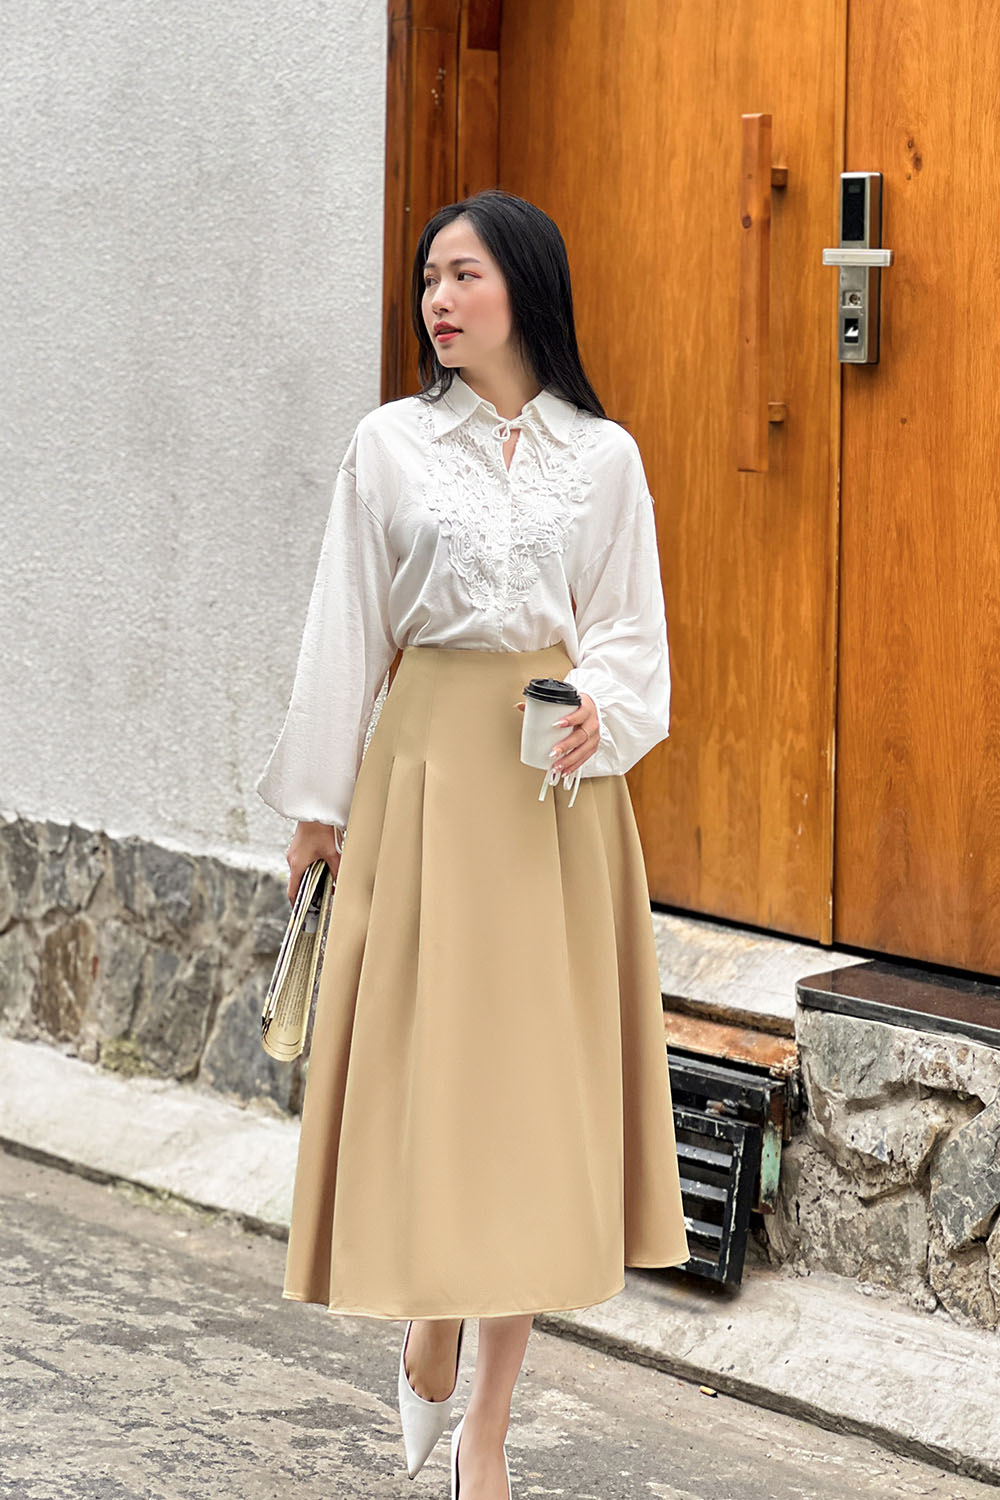 Bật mí cách diện chân váy dài cực xinh cho nàng công sở | ELLY - TOP 10  Thương Hiệu Nổi Tiếng Việt Nam